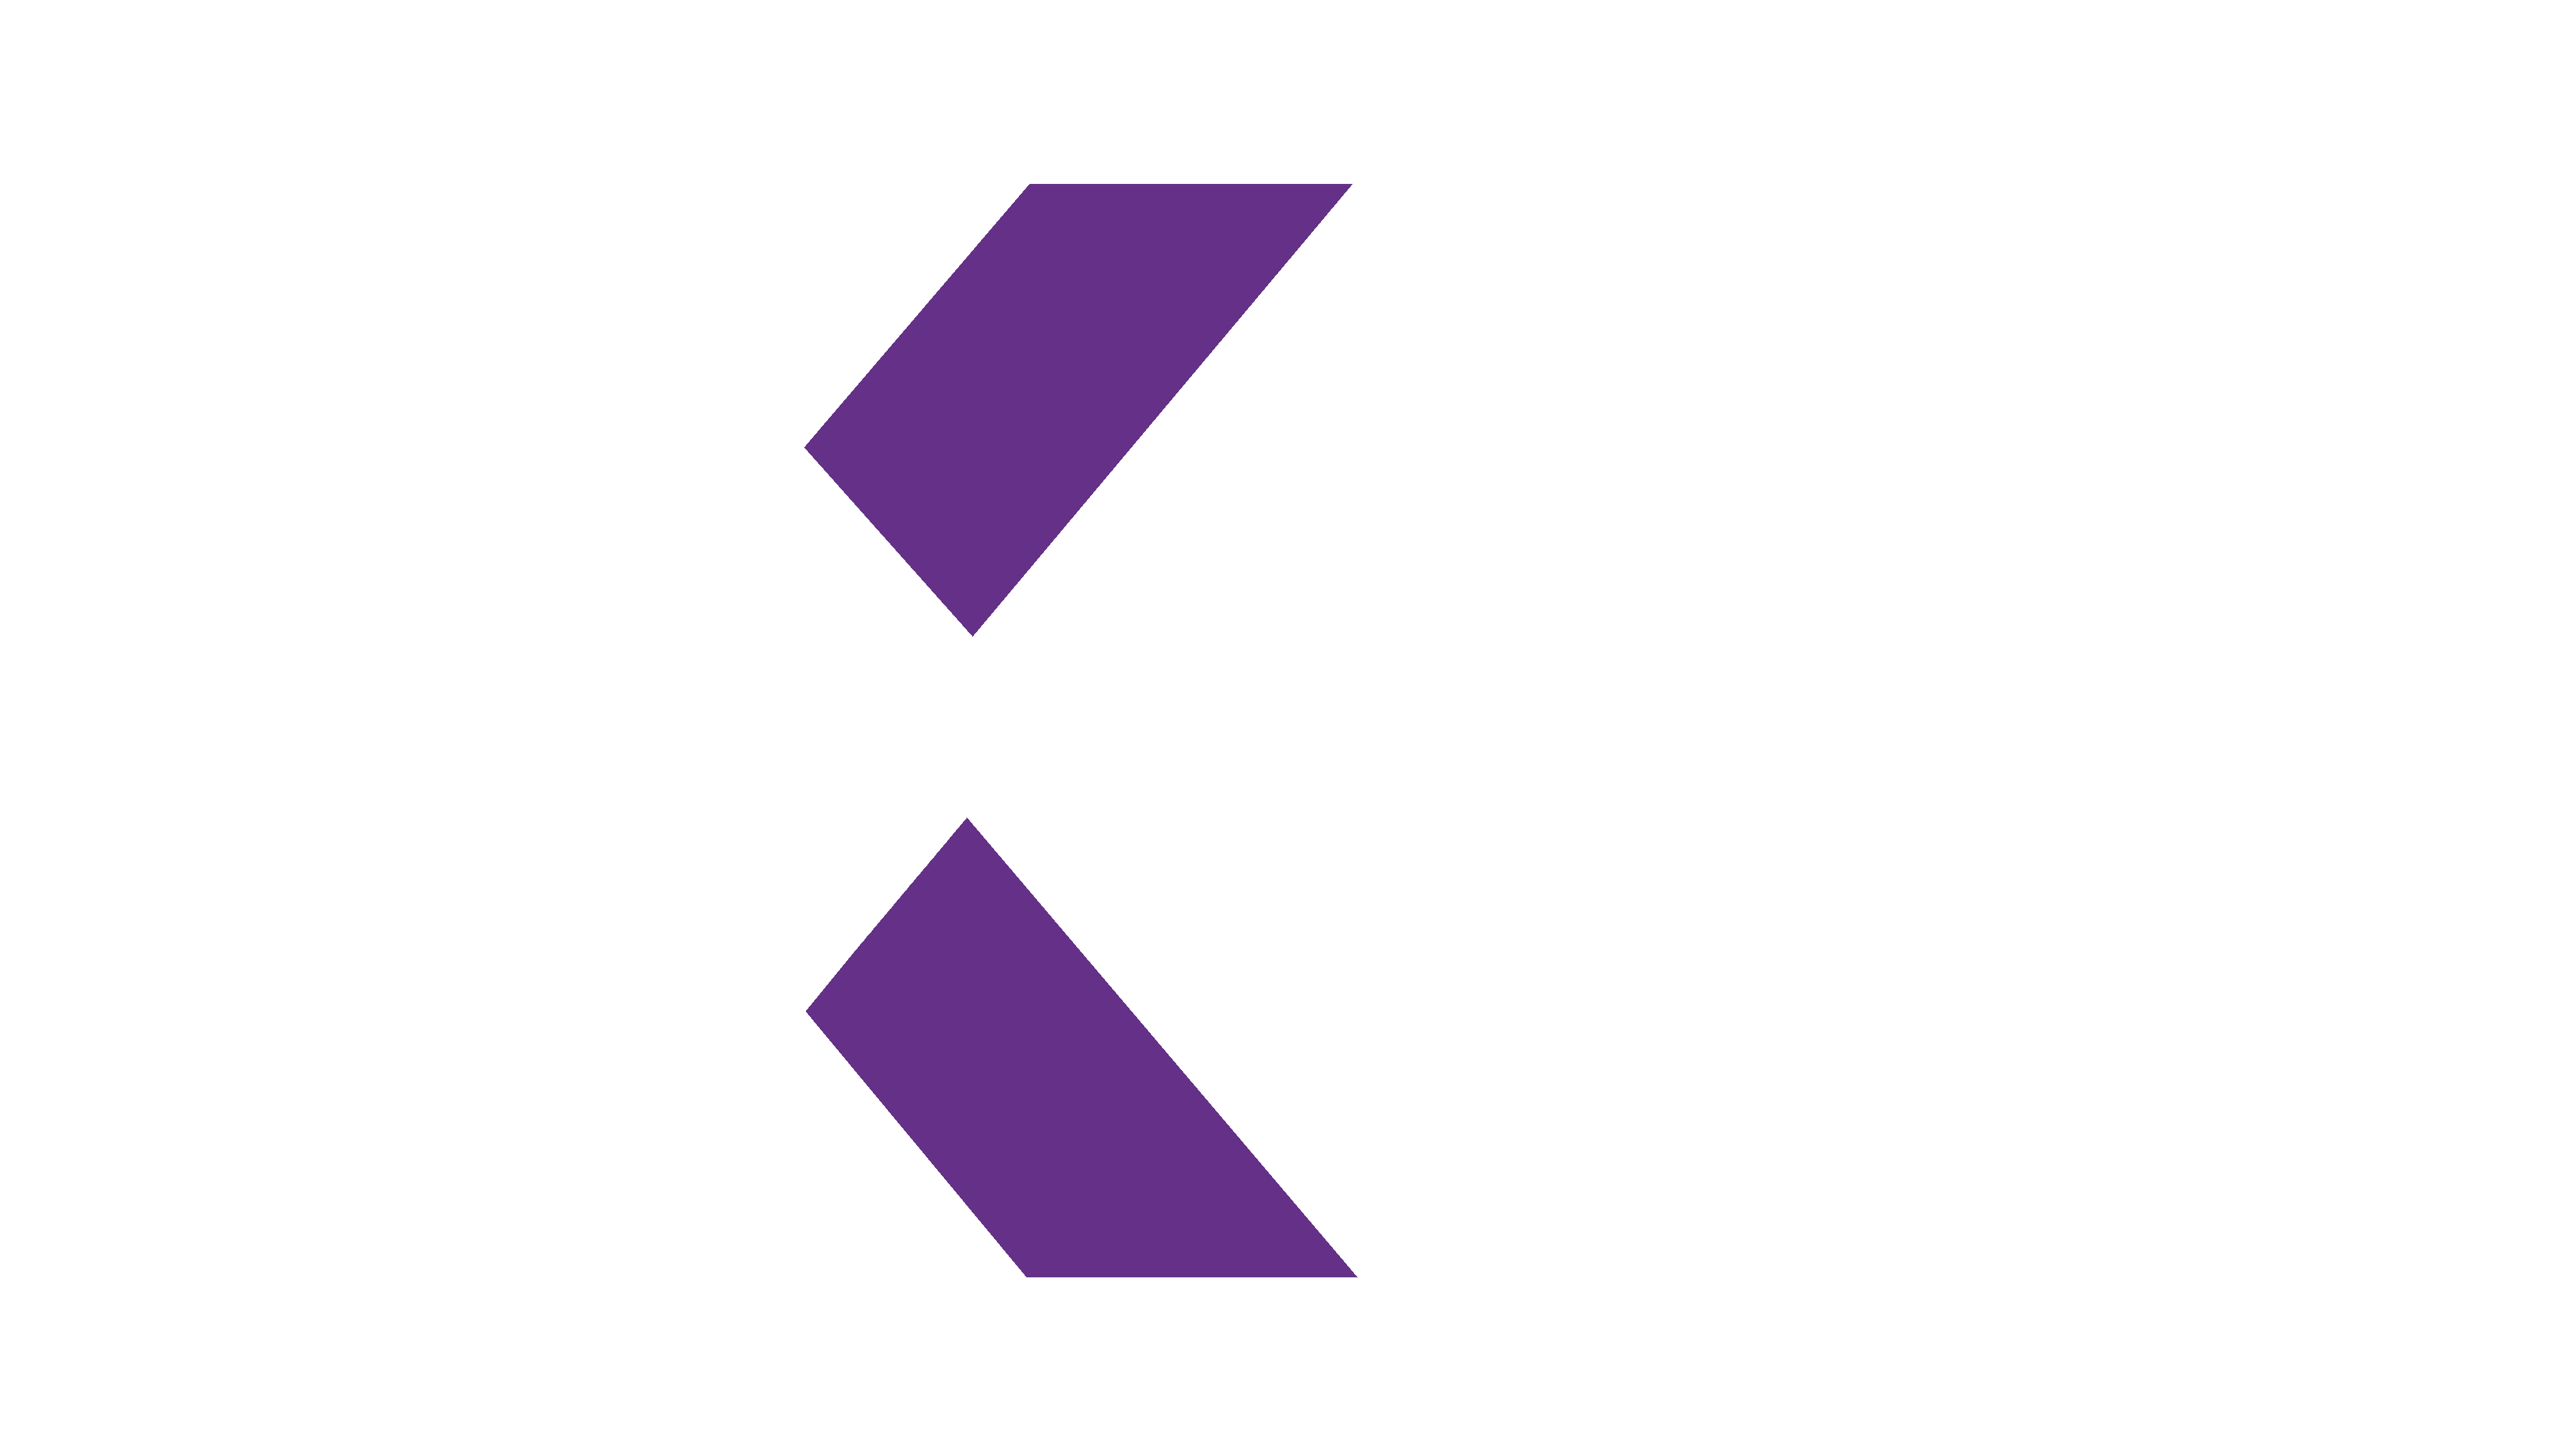 Channel Xero